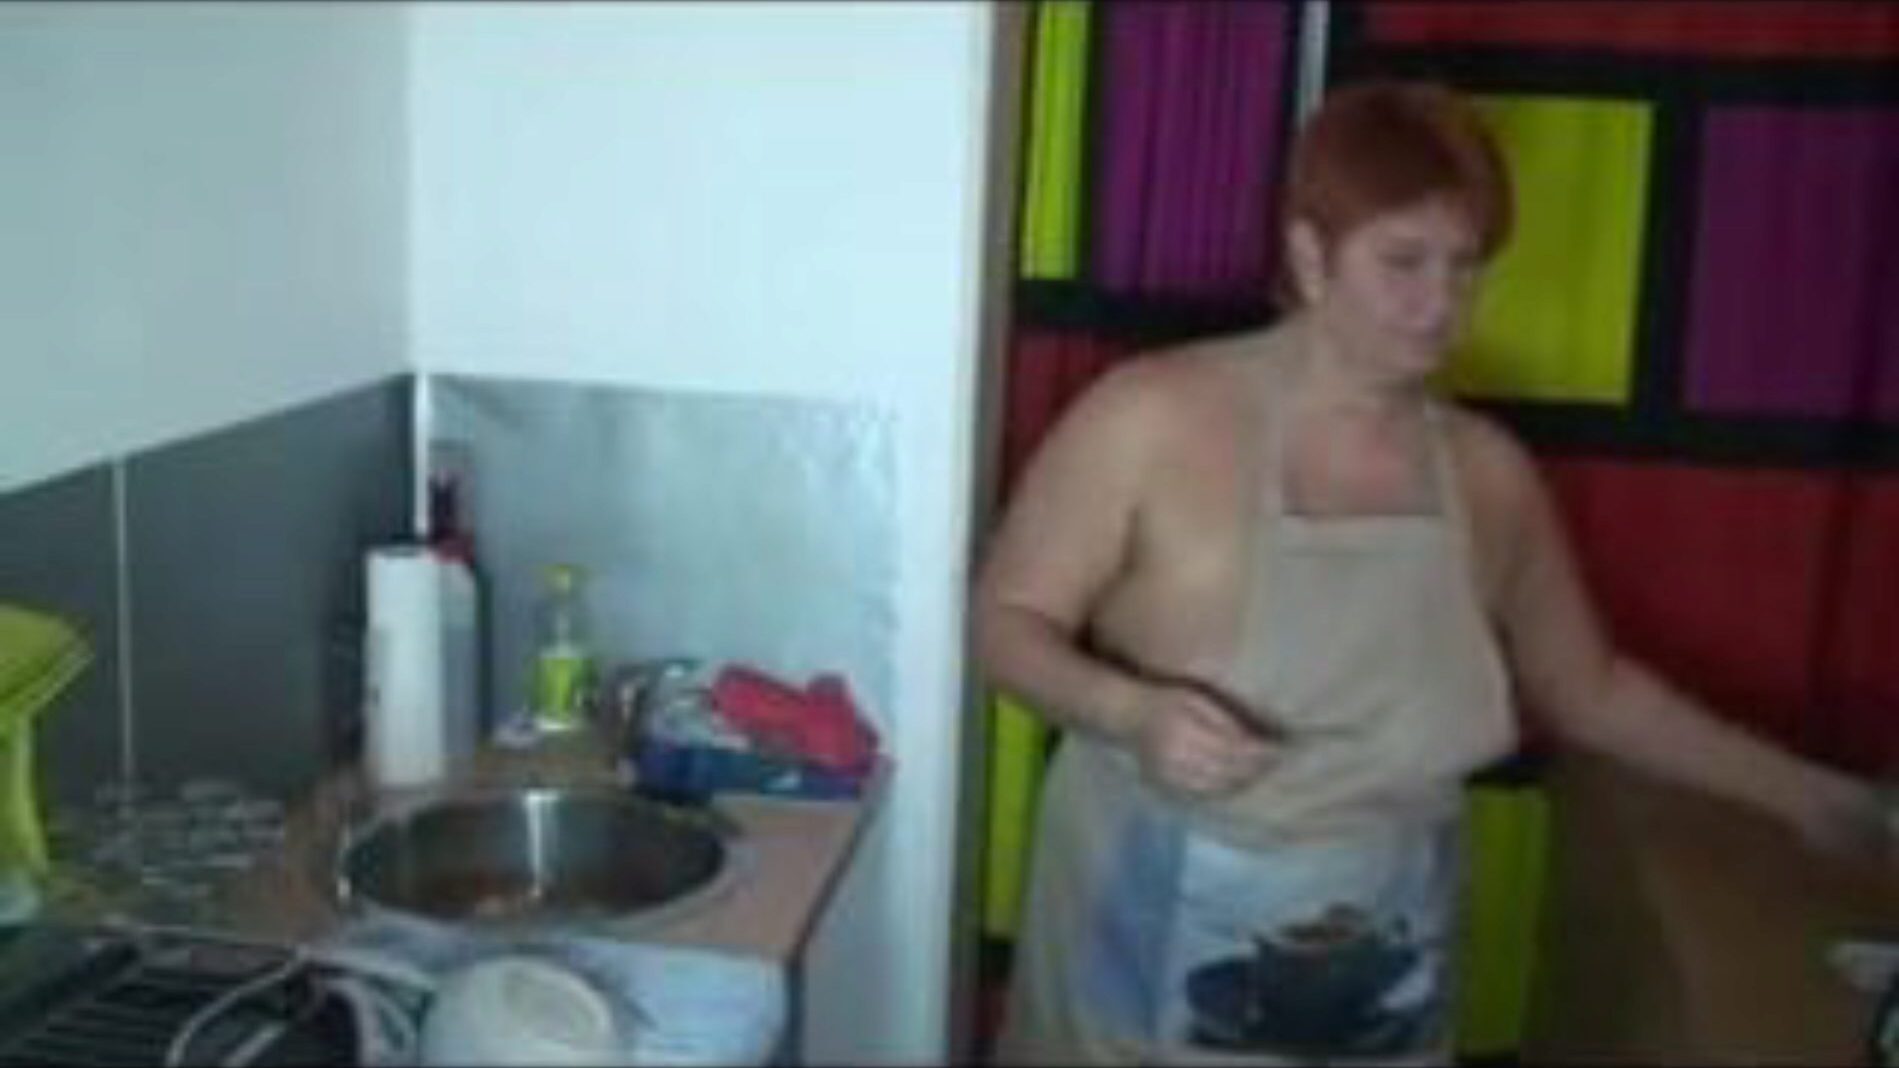 cuando lava los platos en la cocina, porno gratis 55: xhamster mira cuando lava los platos en la cocina clip en xhamster, el sitio de tubo de sexo gigante con toneladas de videos porno alemanes más calientes y que suenan gratis